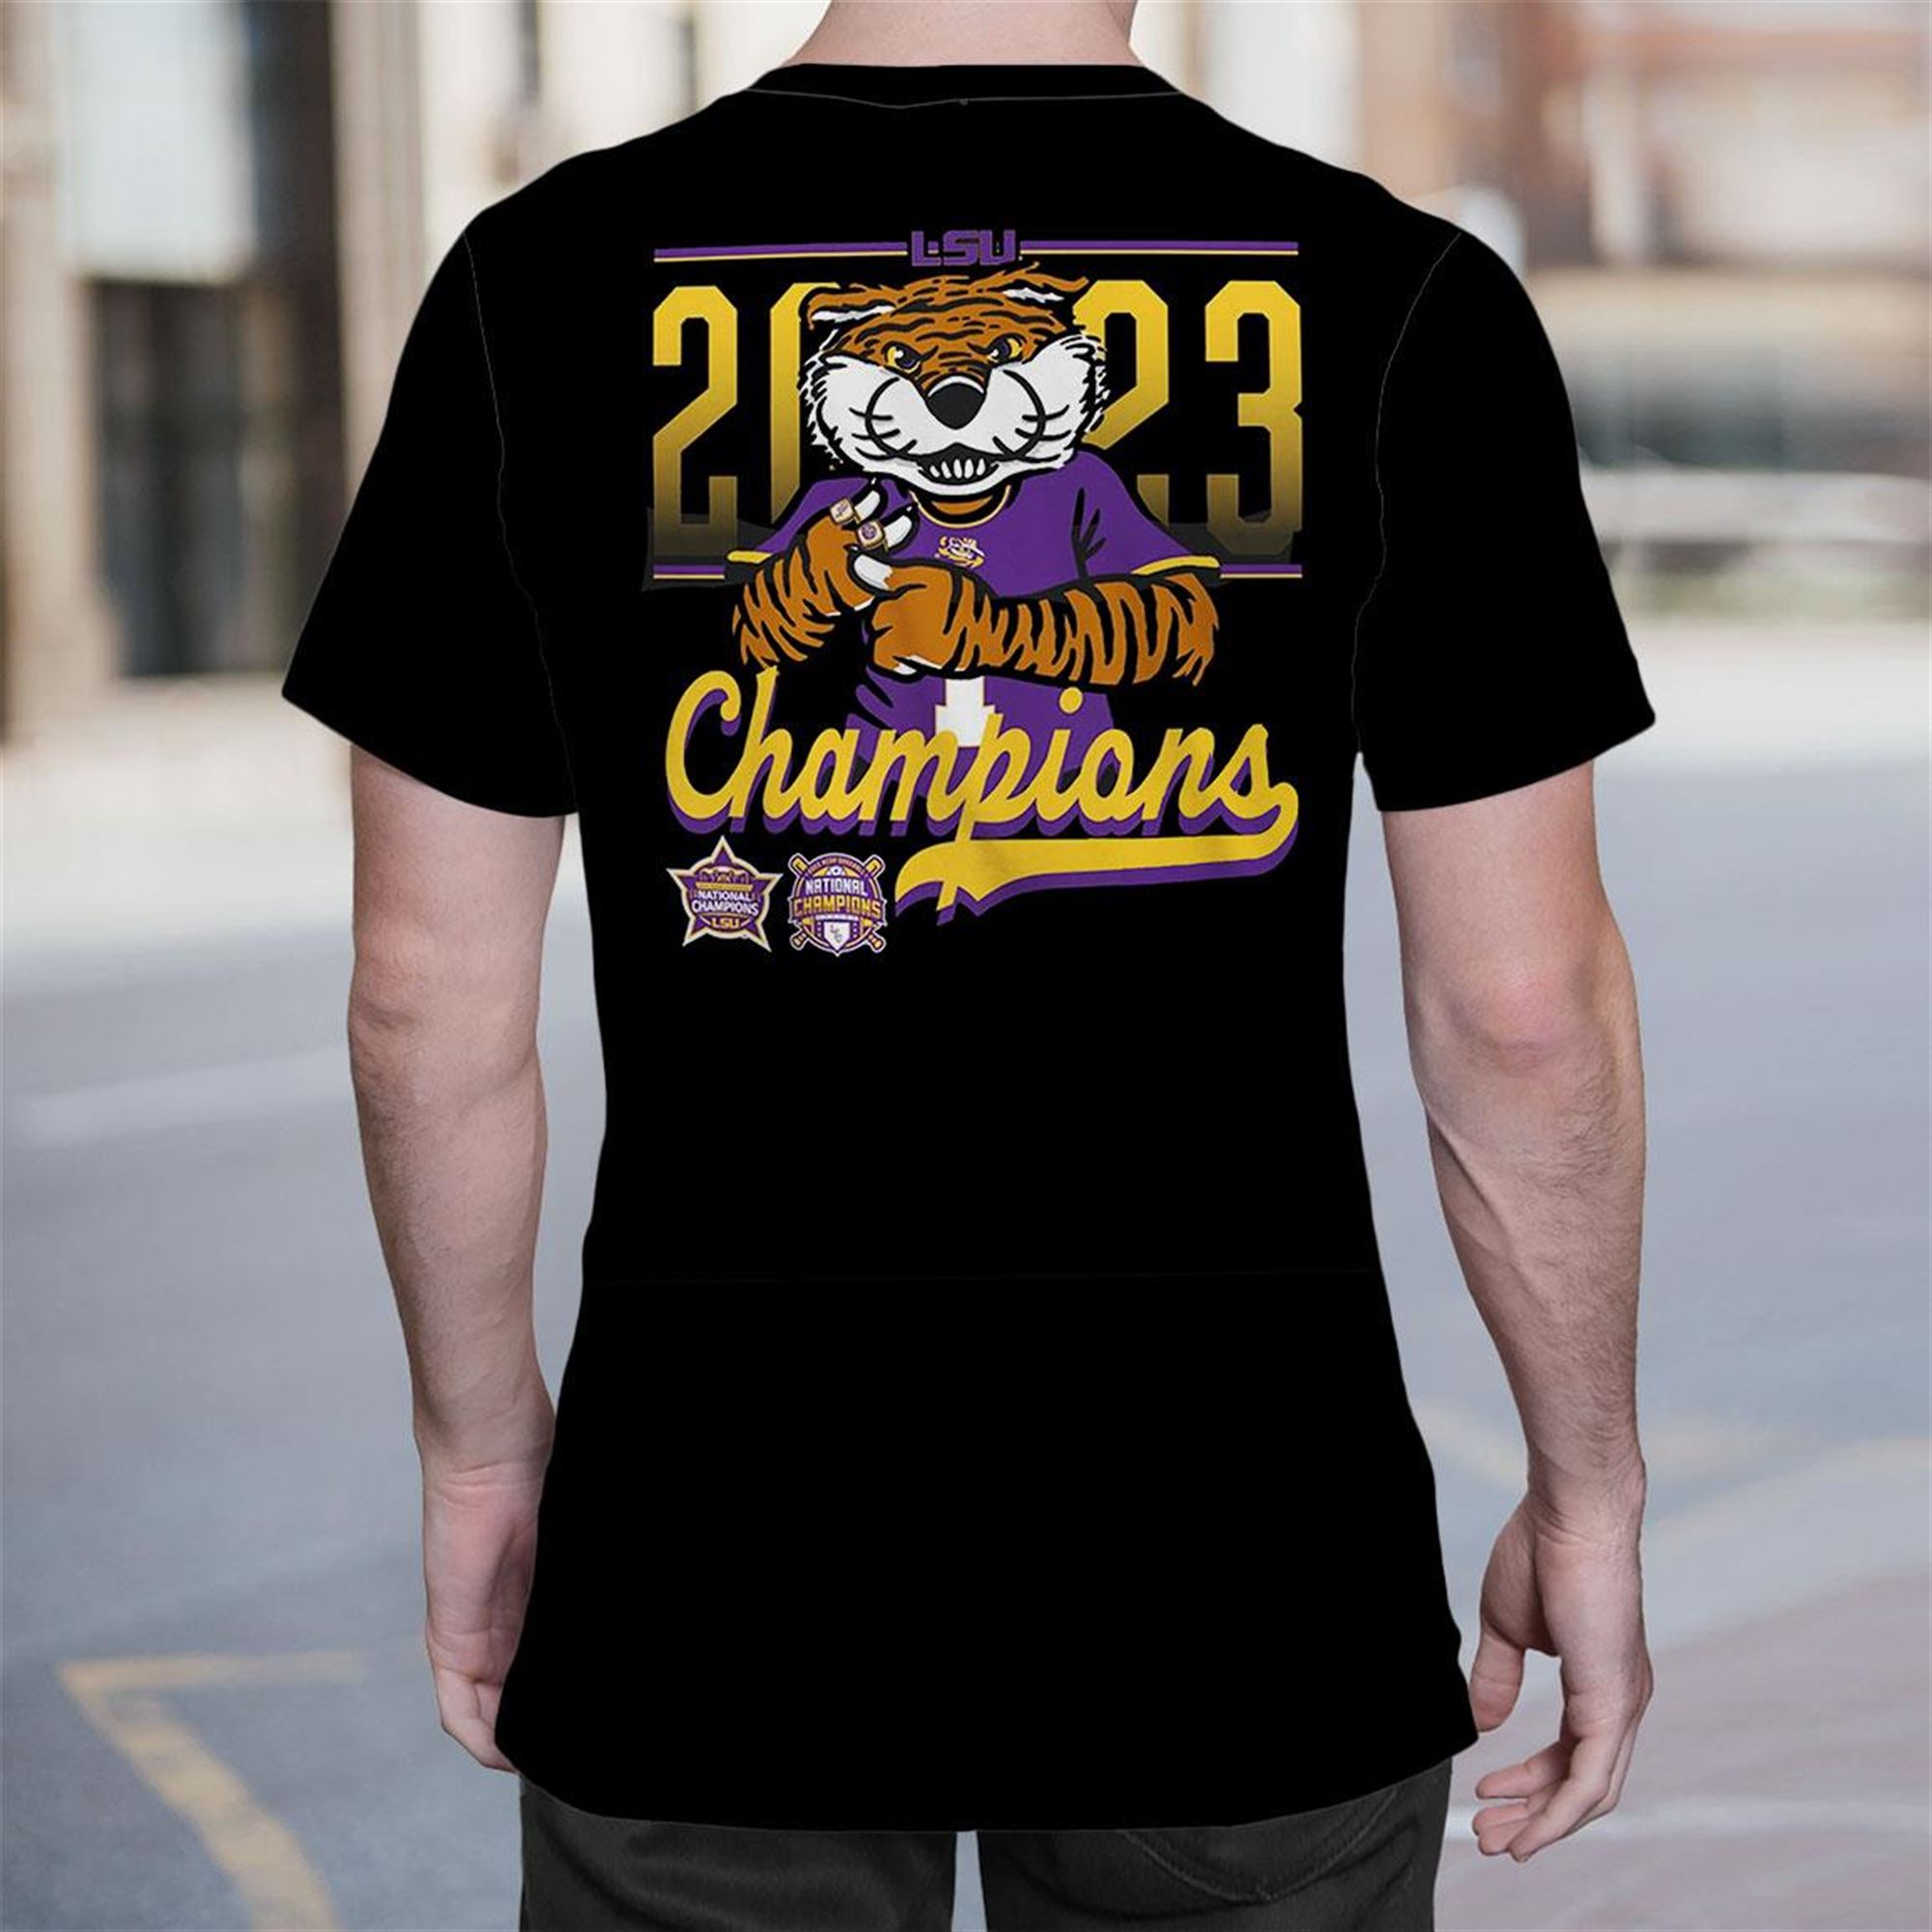 Tigers baseball championship jersey